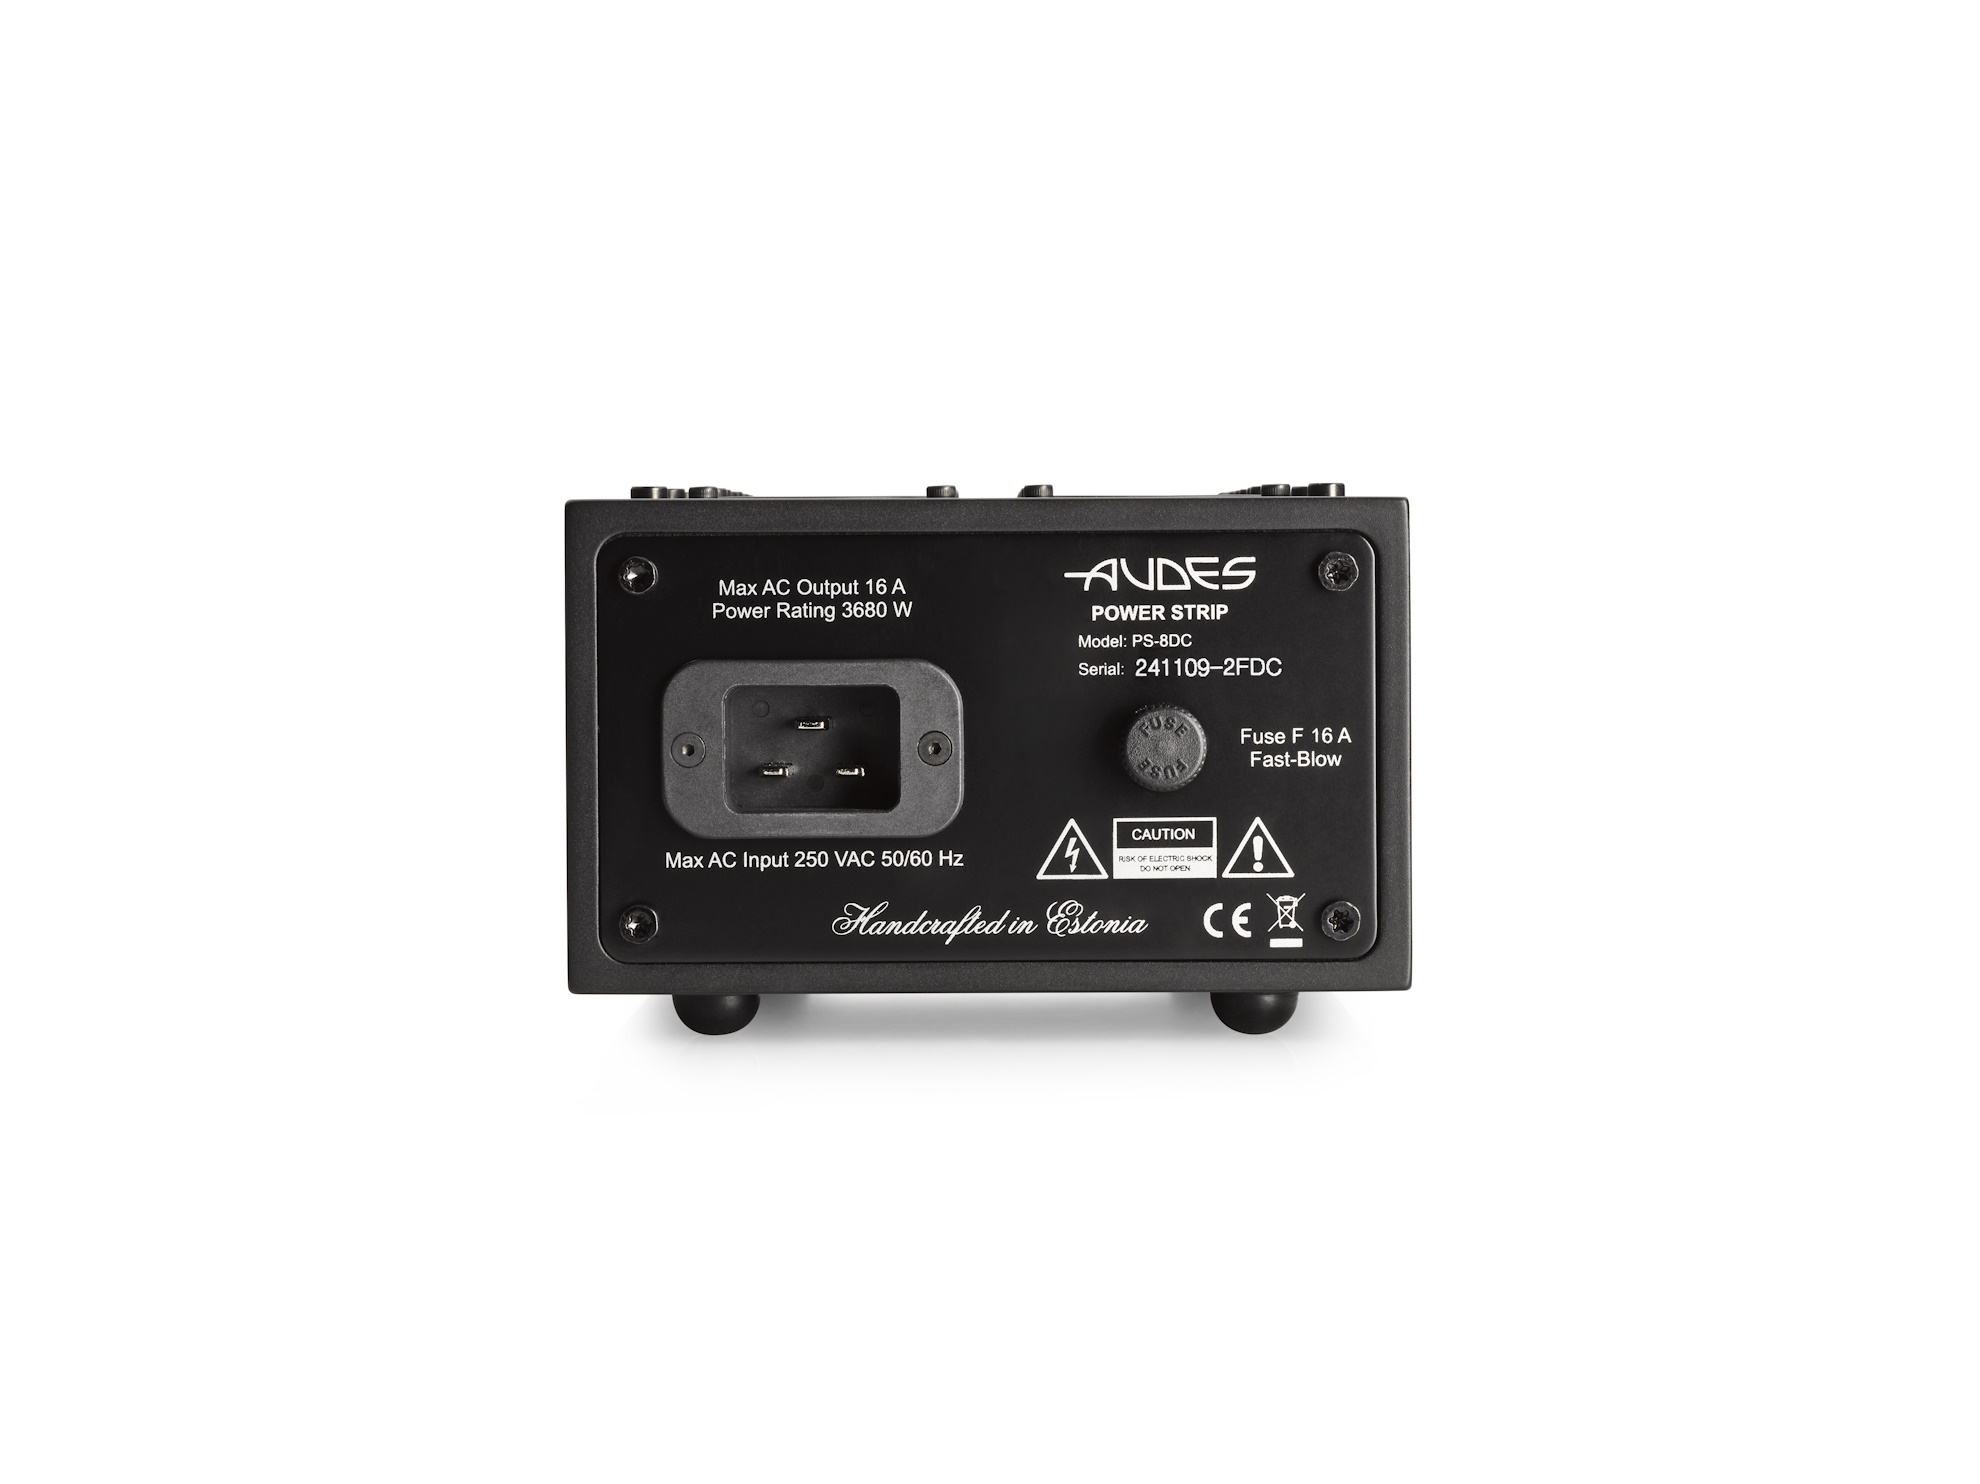 Audes PS-8 Steckdosenleiste mit DC Blocker